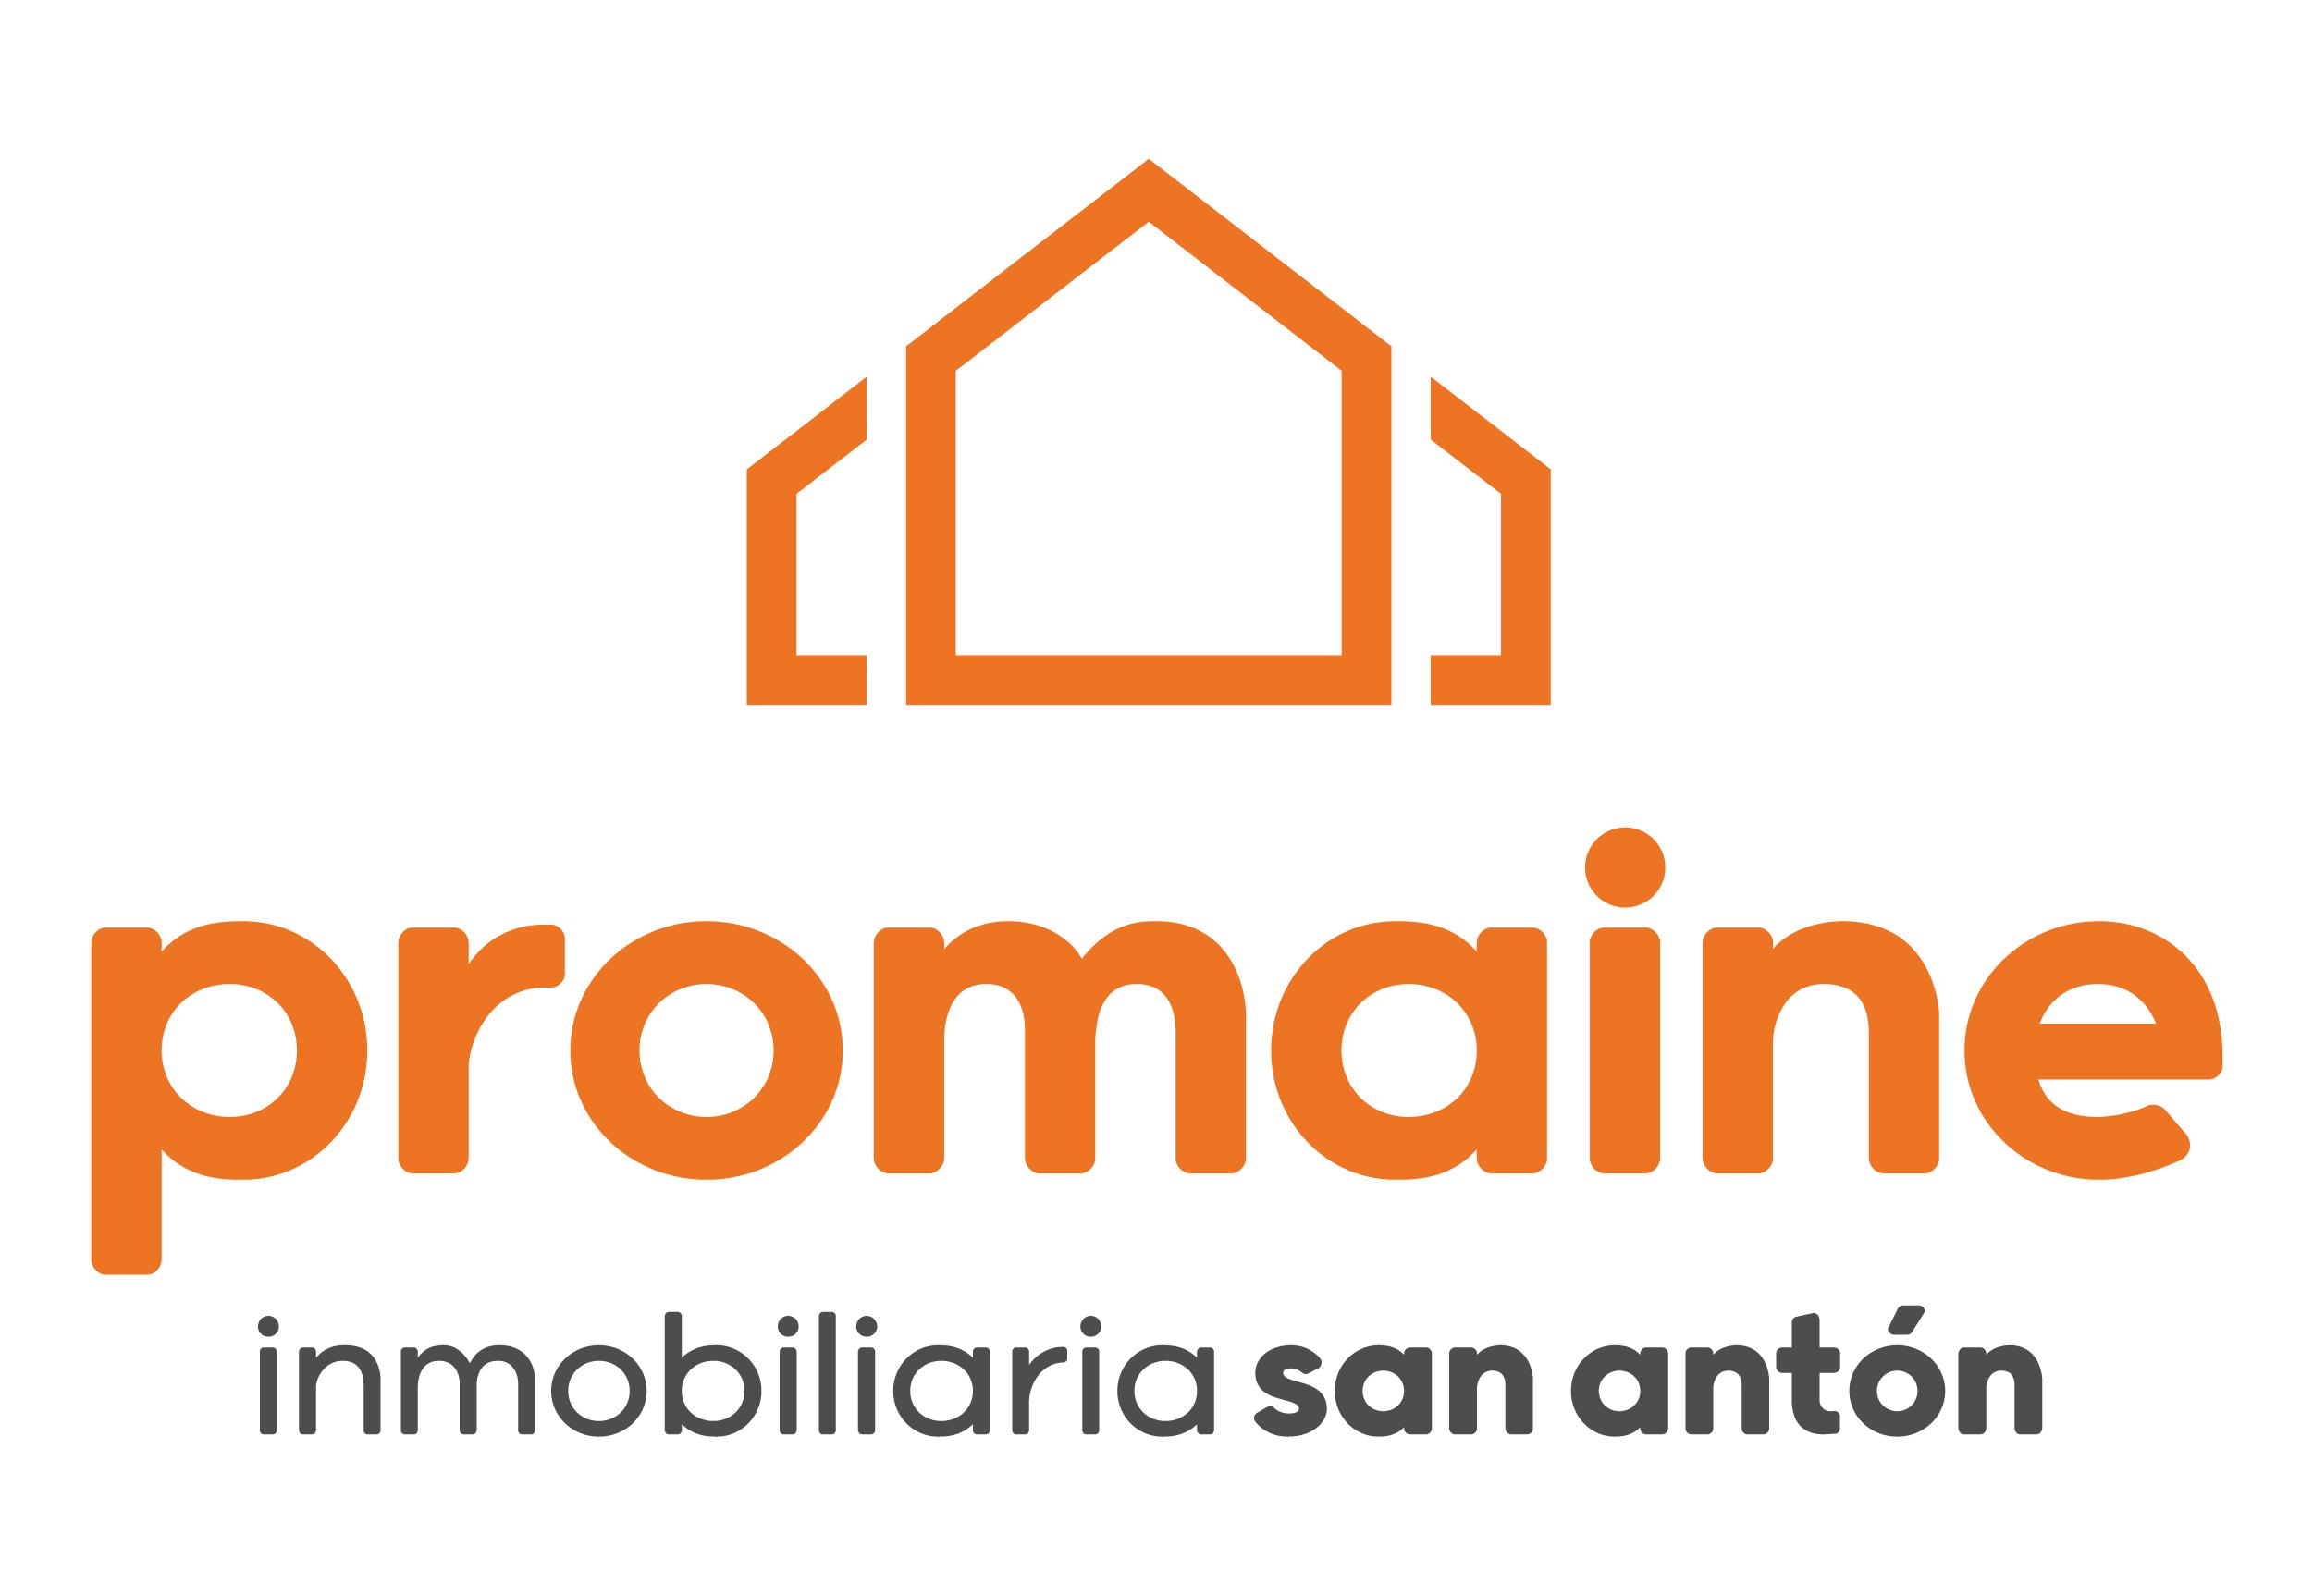 Promaine Inmobiliaria San Antón